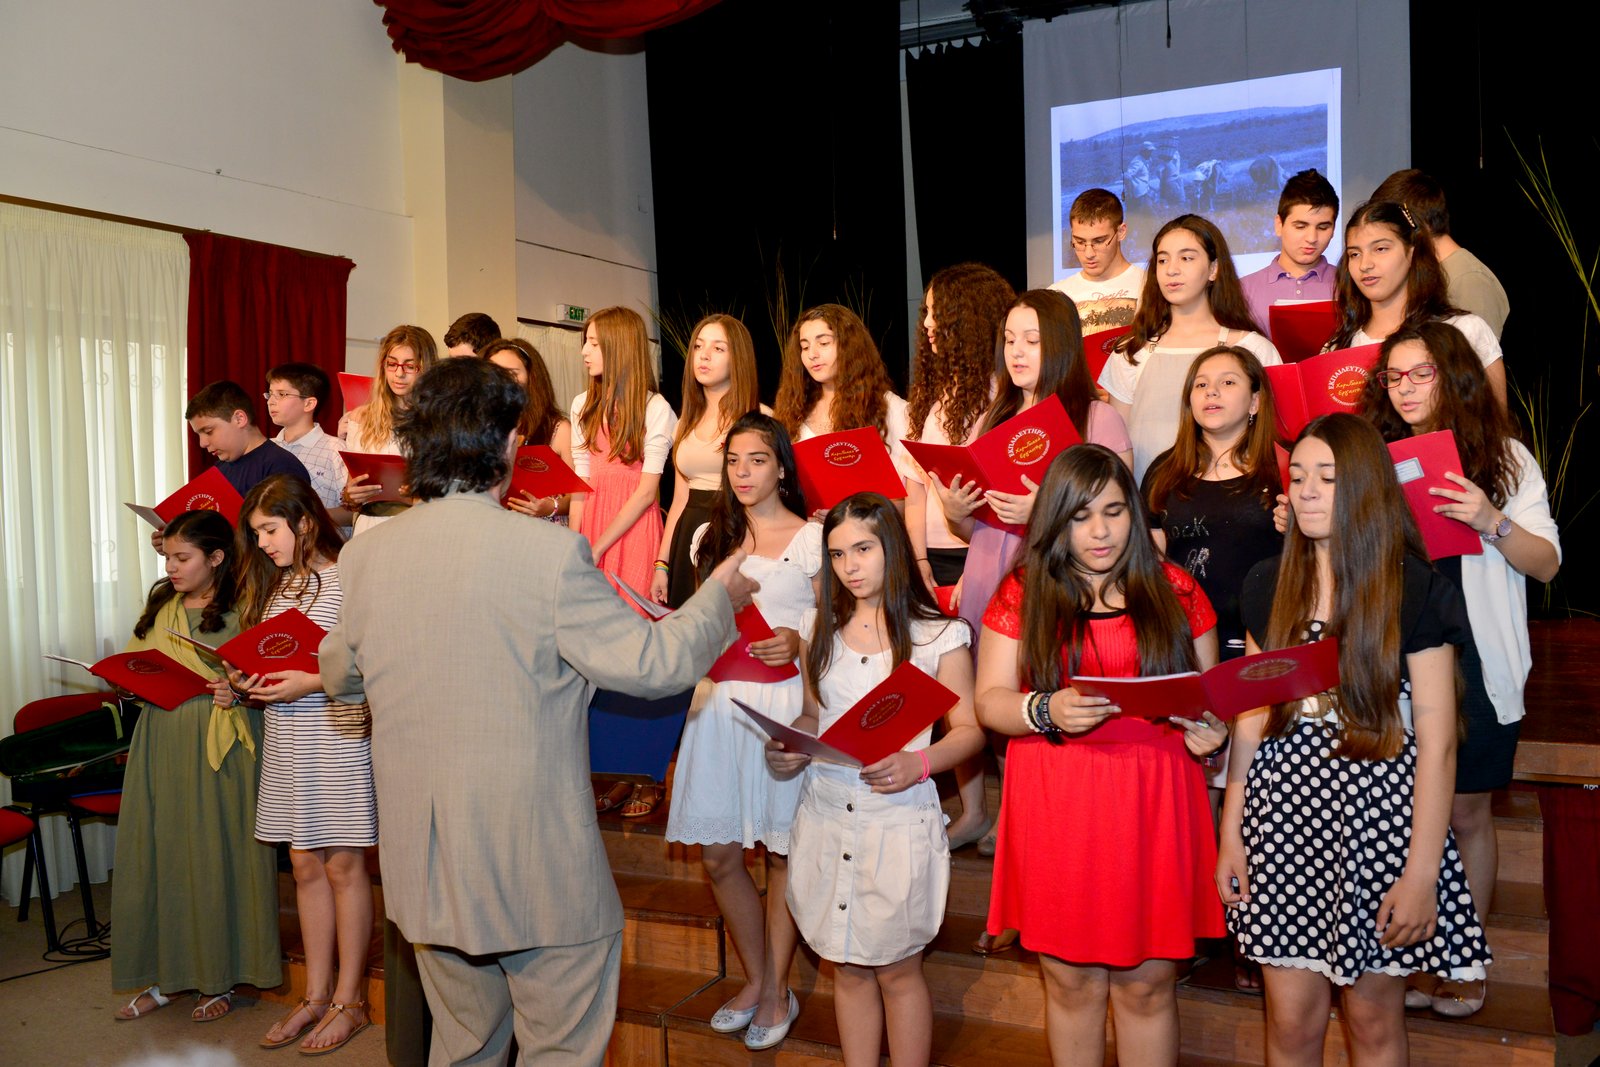 Γιορτή λήξης σχολικής χρονιάς 2013-2014 του Γυμνασίου της Ιεράς Μητροπόλεως Πειραιώς